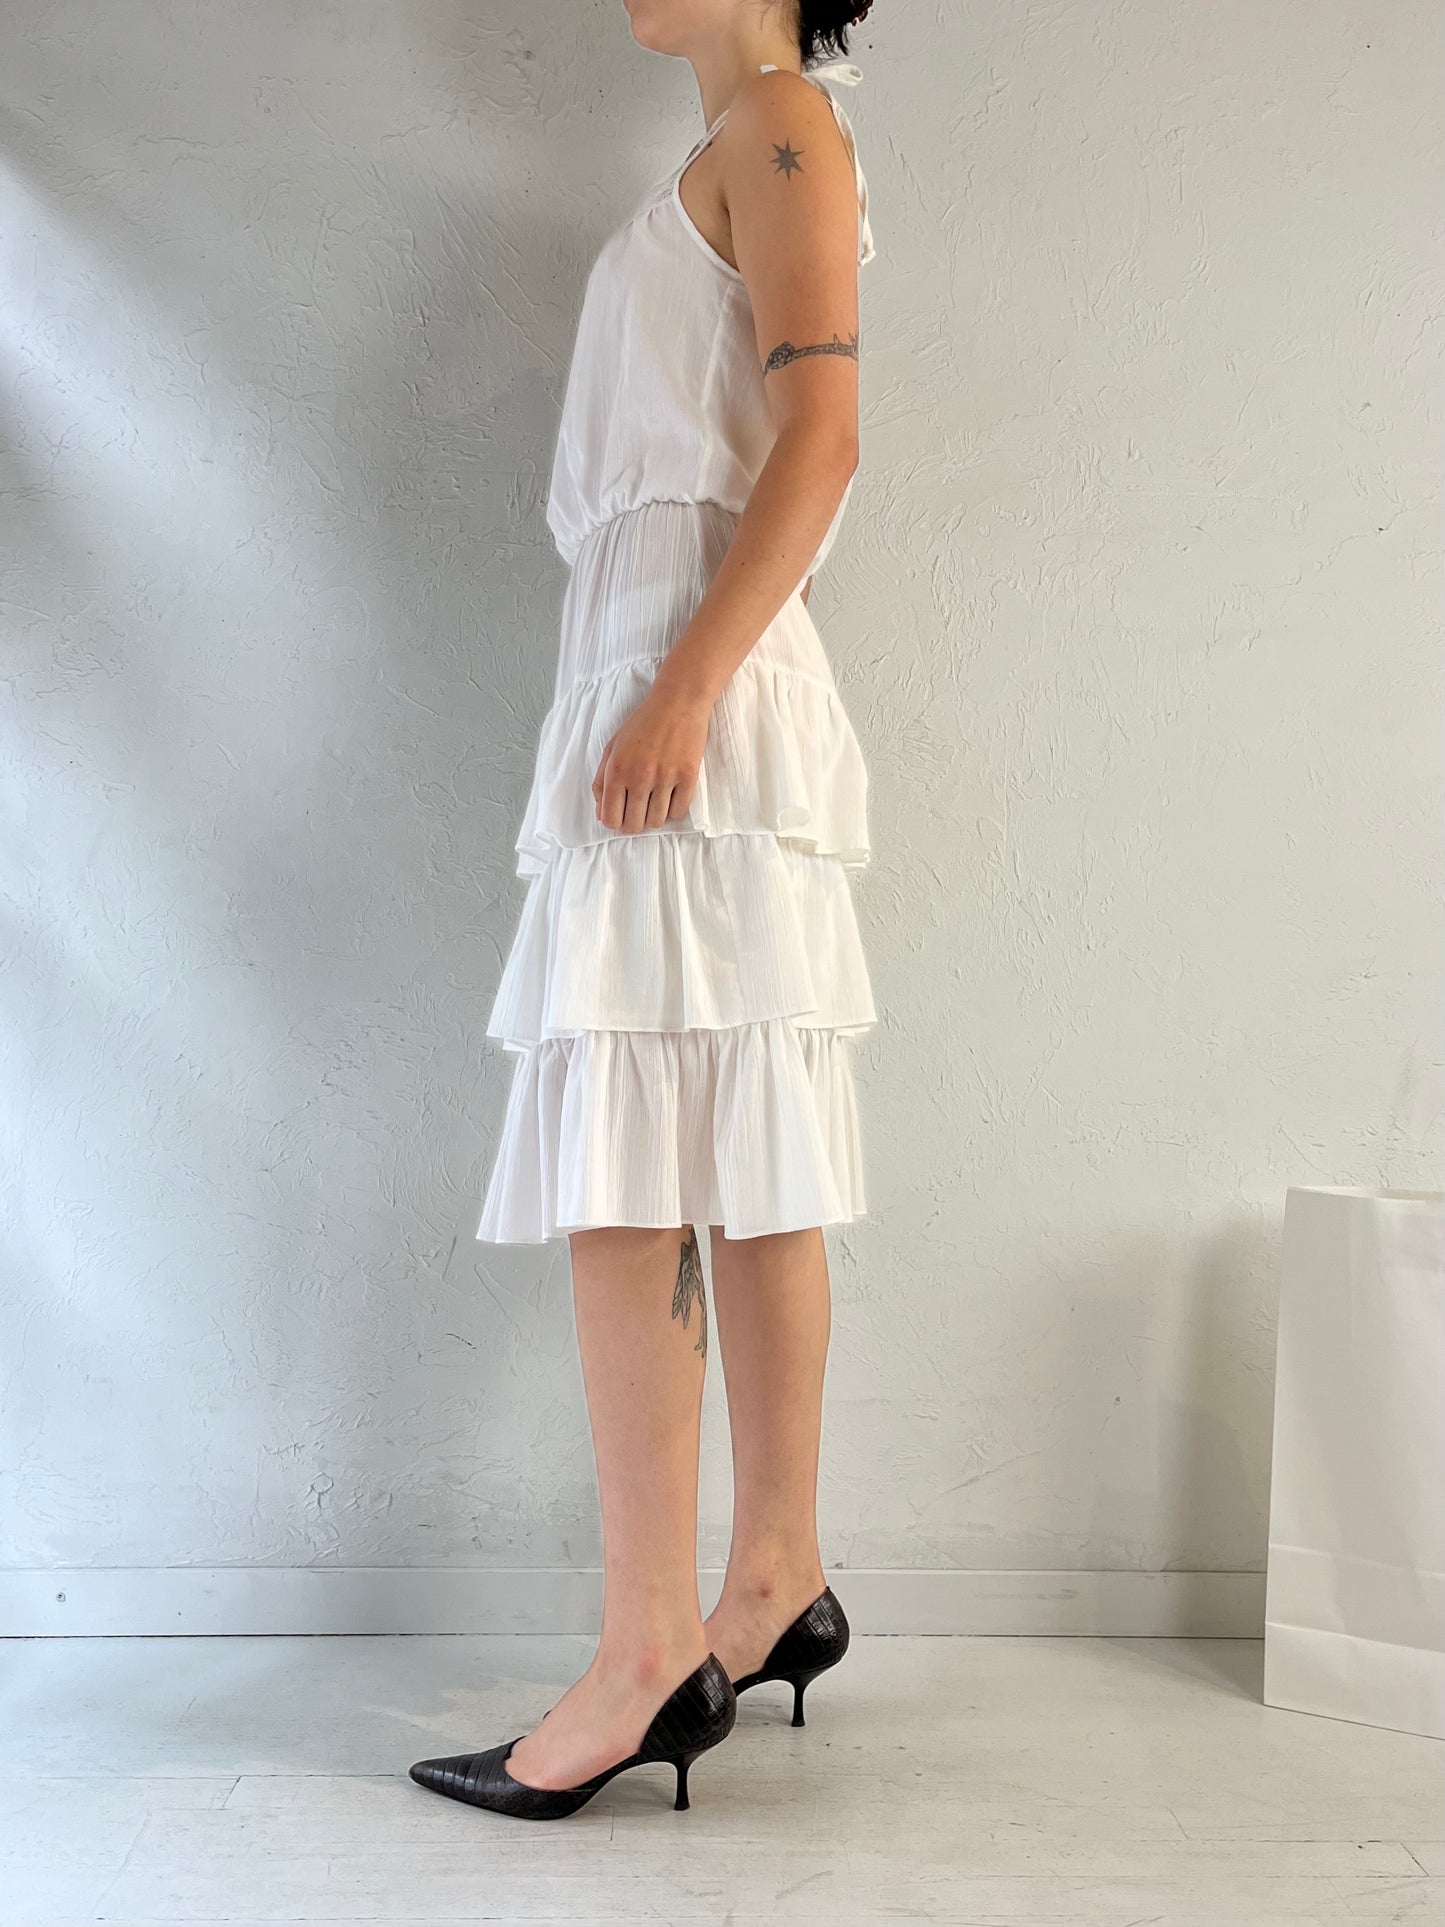 70s 'Joseph Ribkoff' White Tiered Midi Dress / Union Made / Small